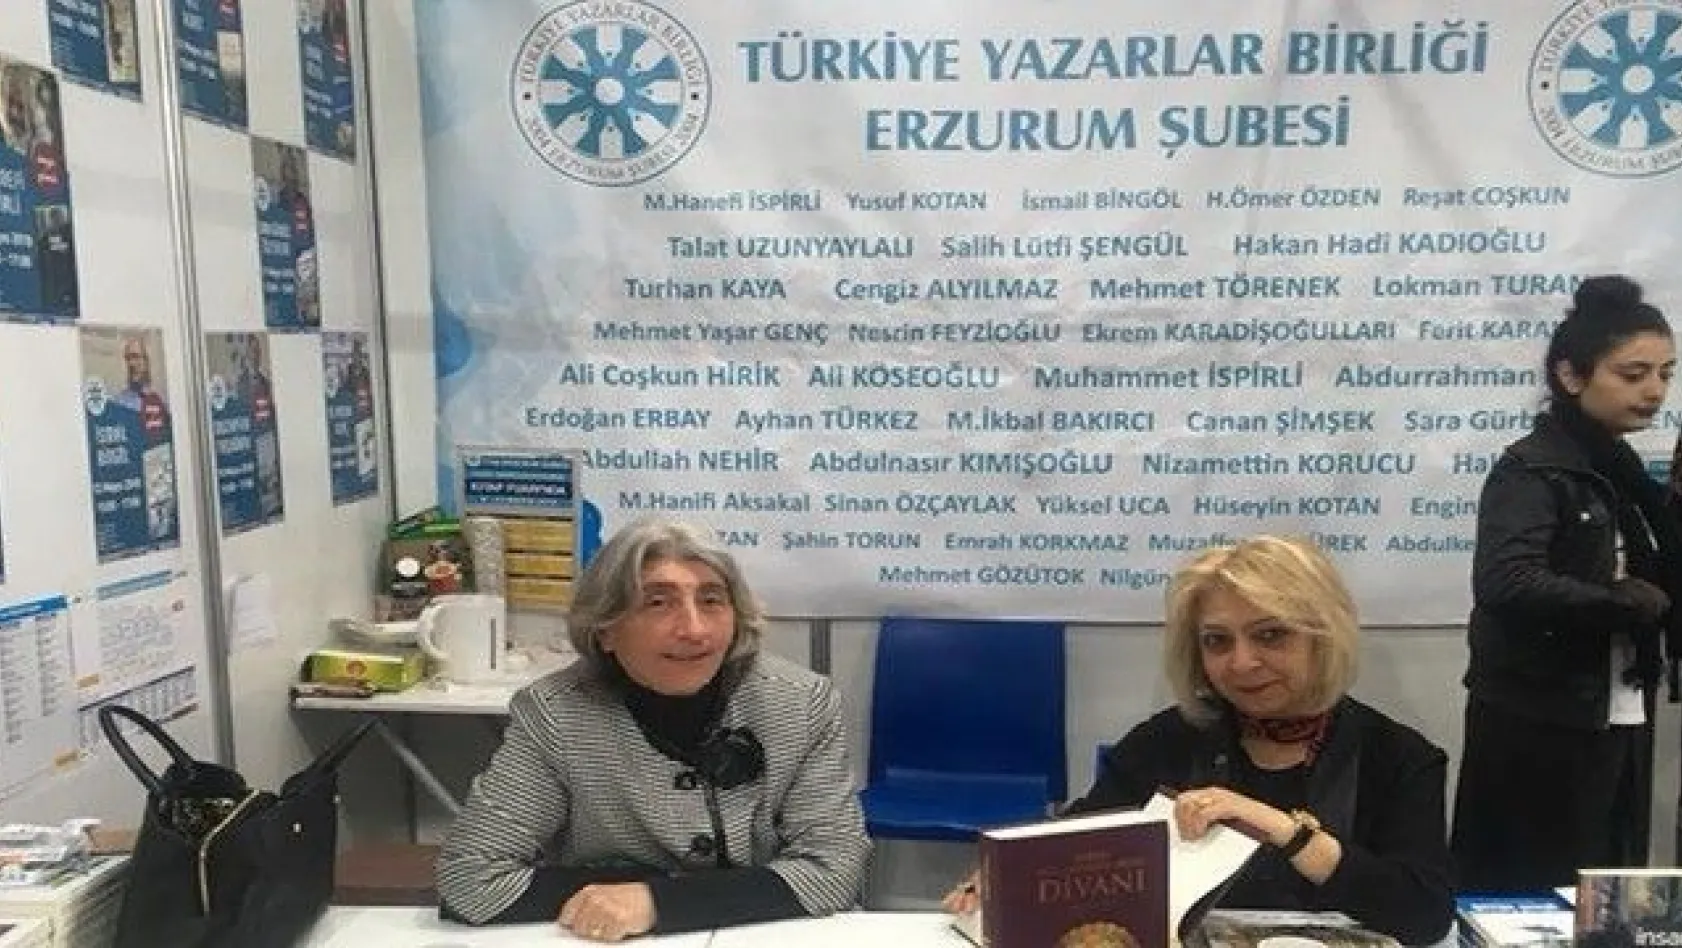 TYB Erzurum Şube Başkanı İspirli'den okurlara teşekkür
